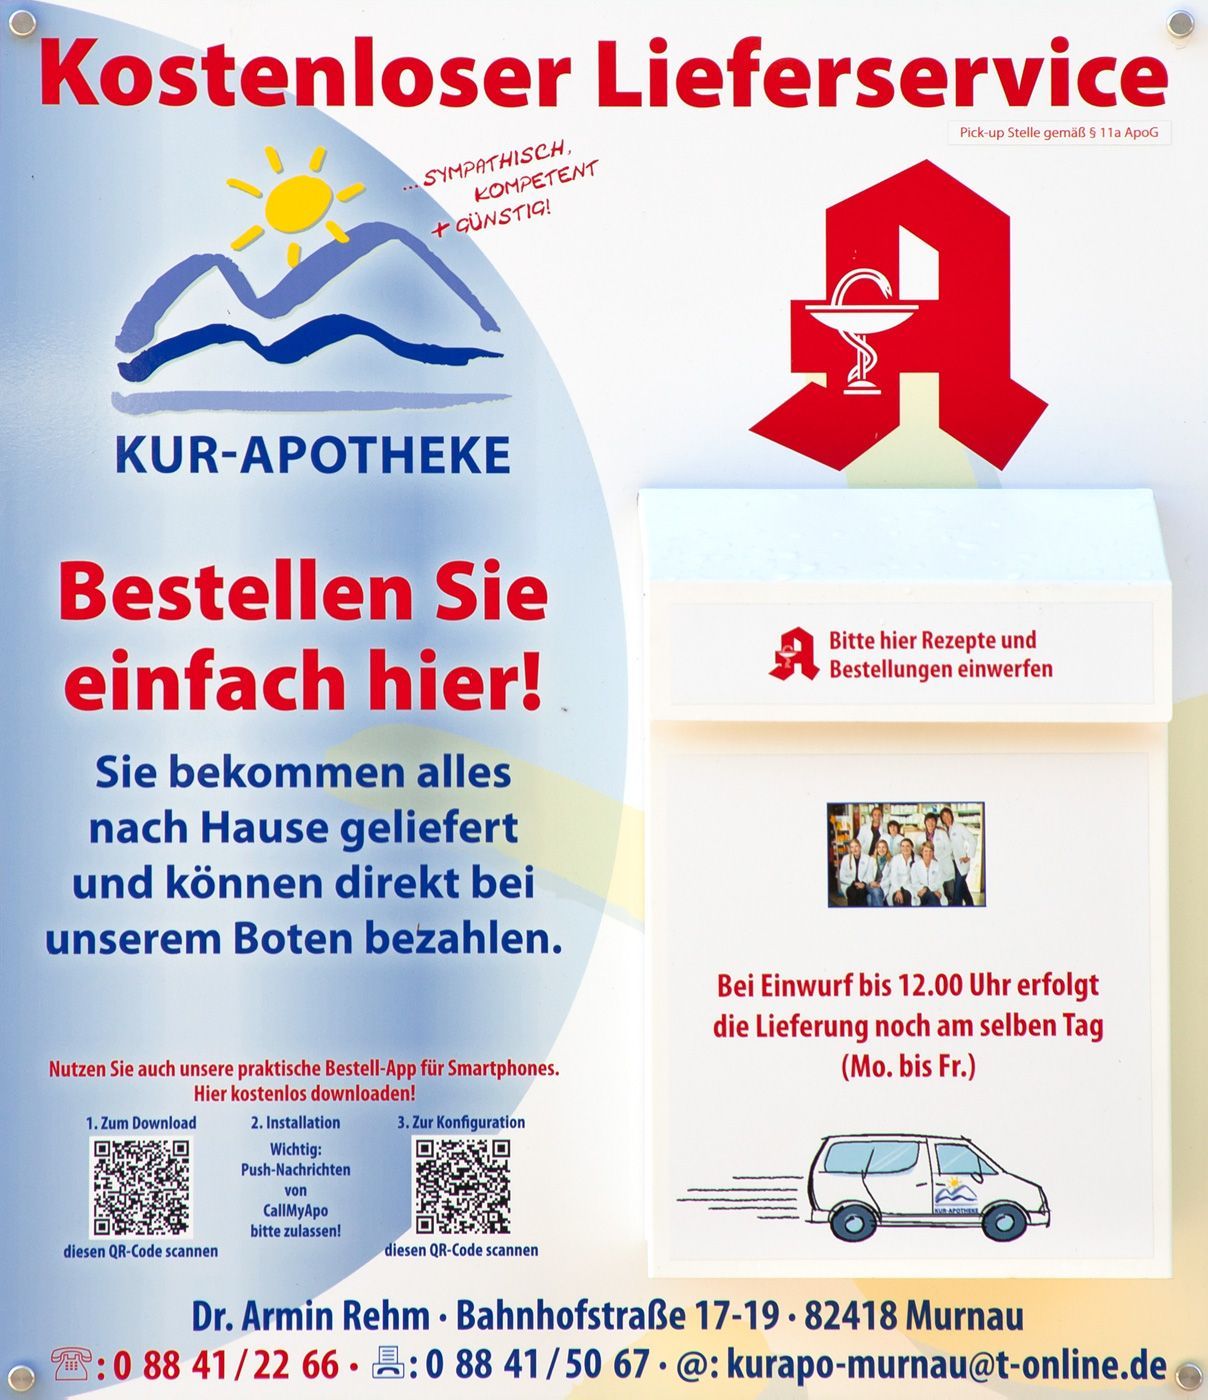 Apotheken-Briefkasten der Kur-Apotheke Murnau, in Ohlstadt und Eschenlohe